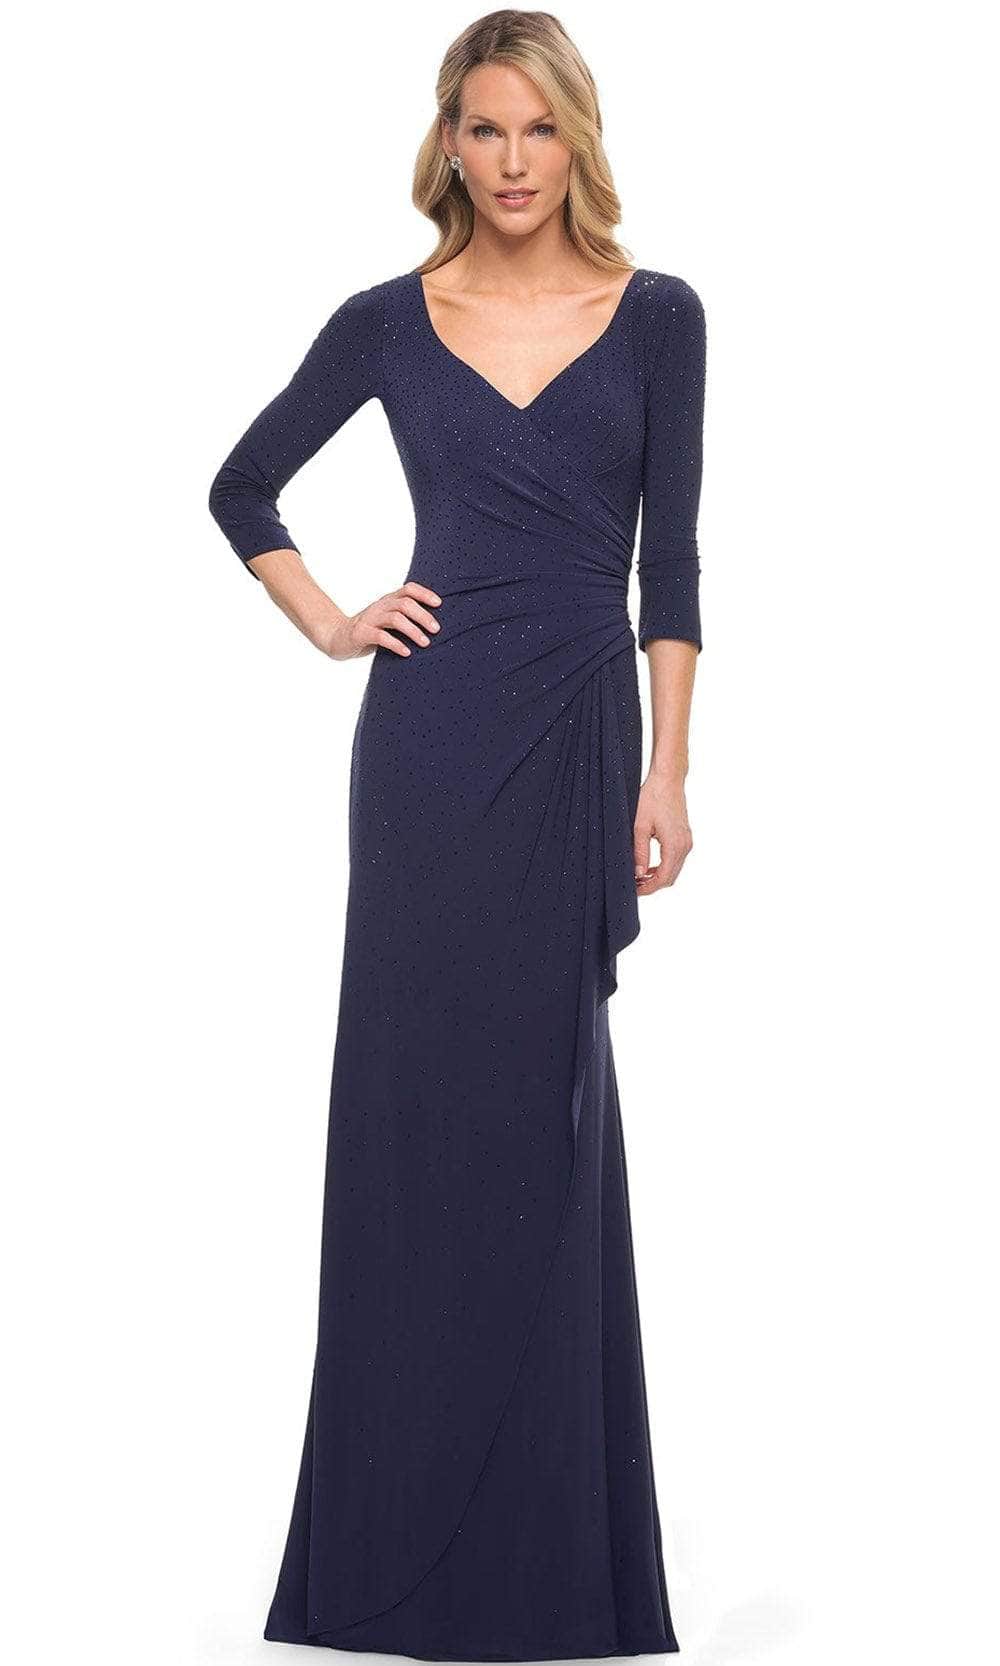 La Femme 30177SC - Quarter Sleeve Jersey Formal Dress Mother of the Bride Dresses 6 / Navy